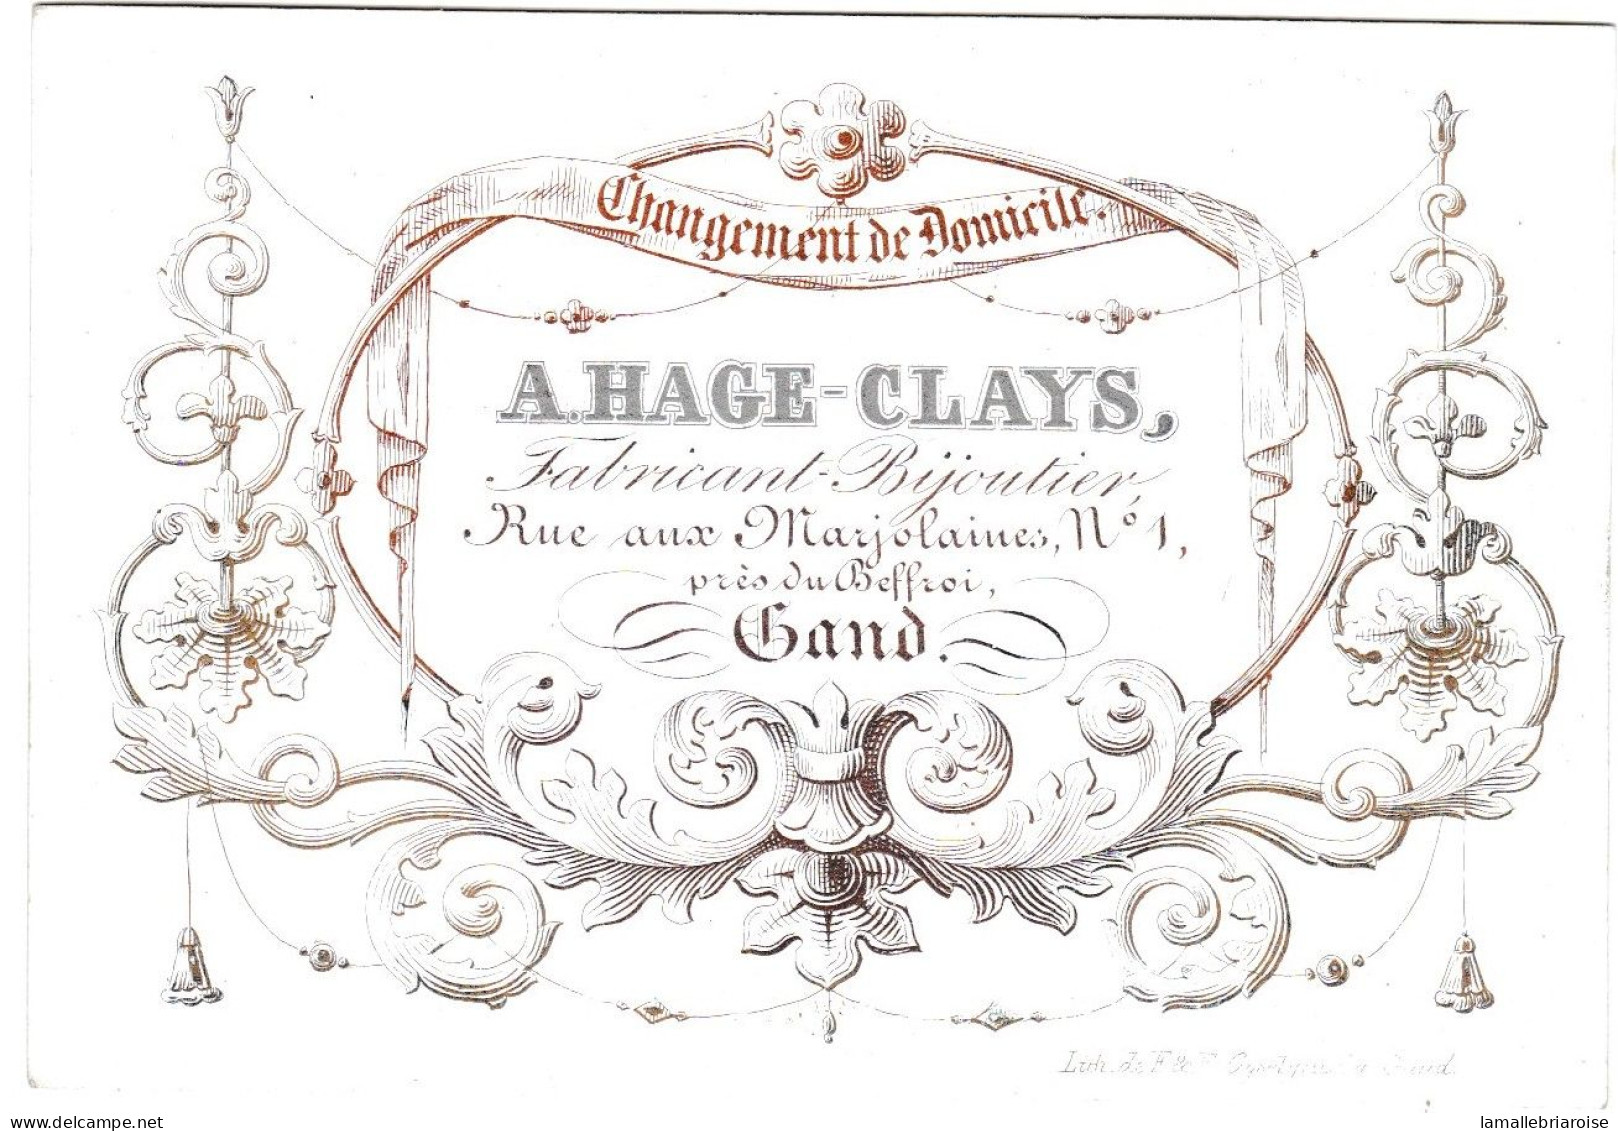 Belgique "Carte Porcelaine" Porseleinkaart, A.Hage - Clays, Bijoutier, Gand, Dim:108x 75mm - Cartes Porcelaine